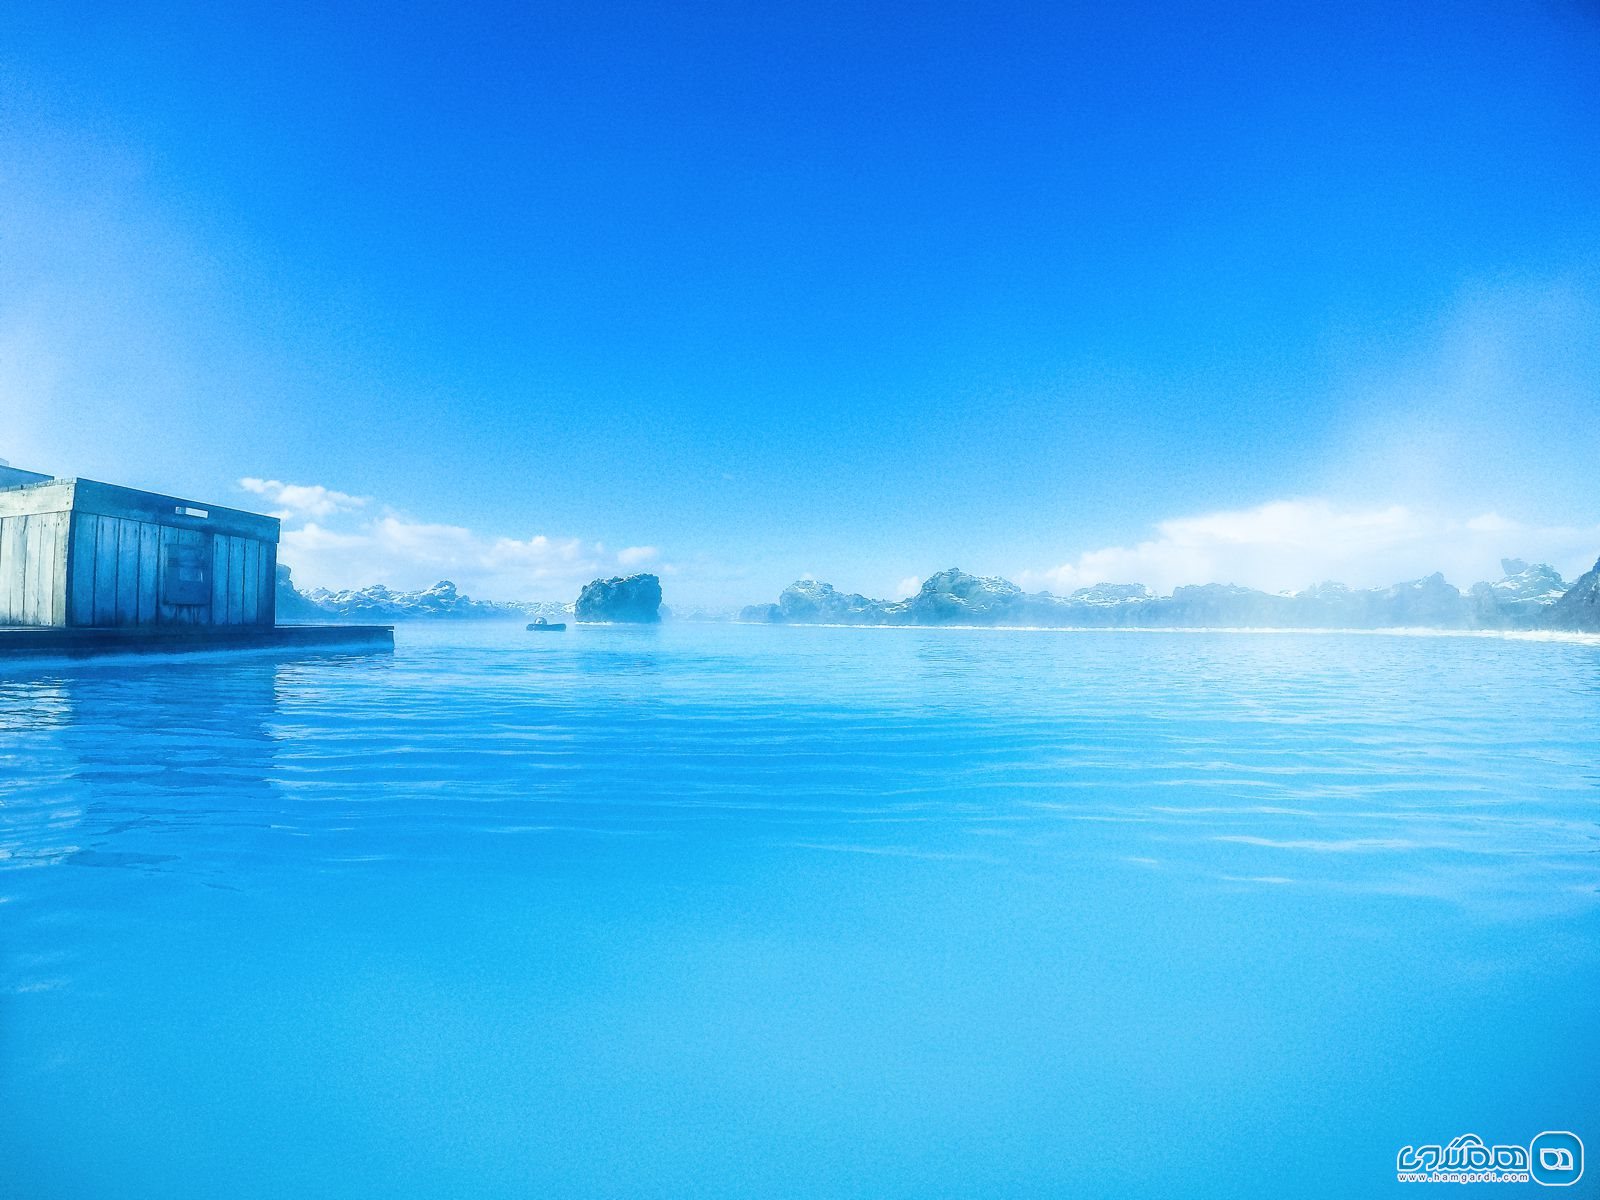 در دریاچه زیبا و خیره کننده بلو لاگون Blue Lagoon وقت گذرانی کنید